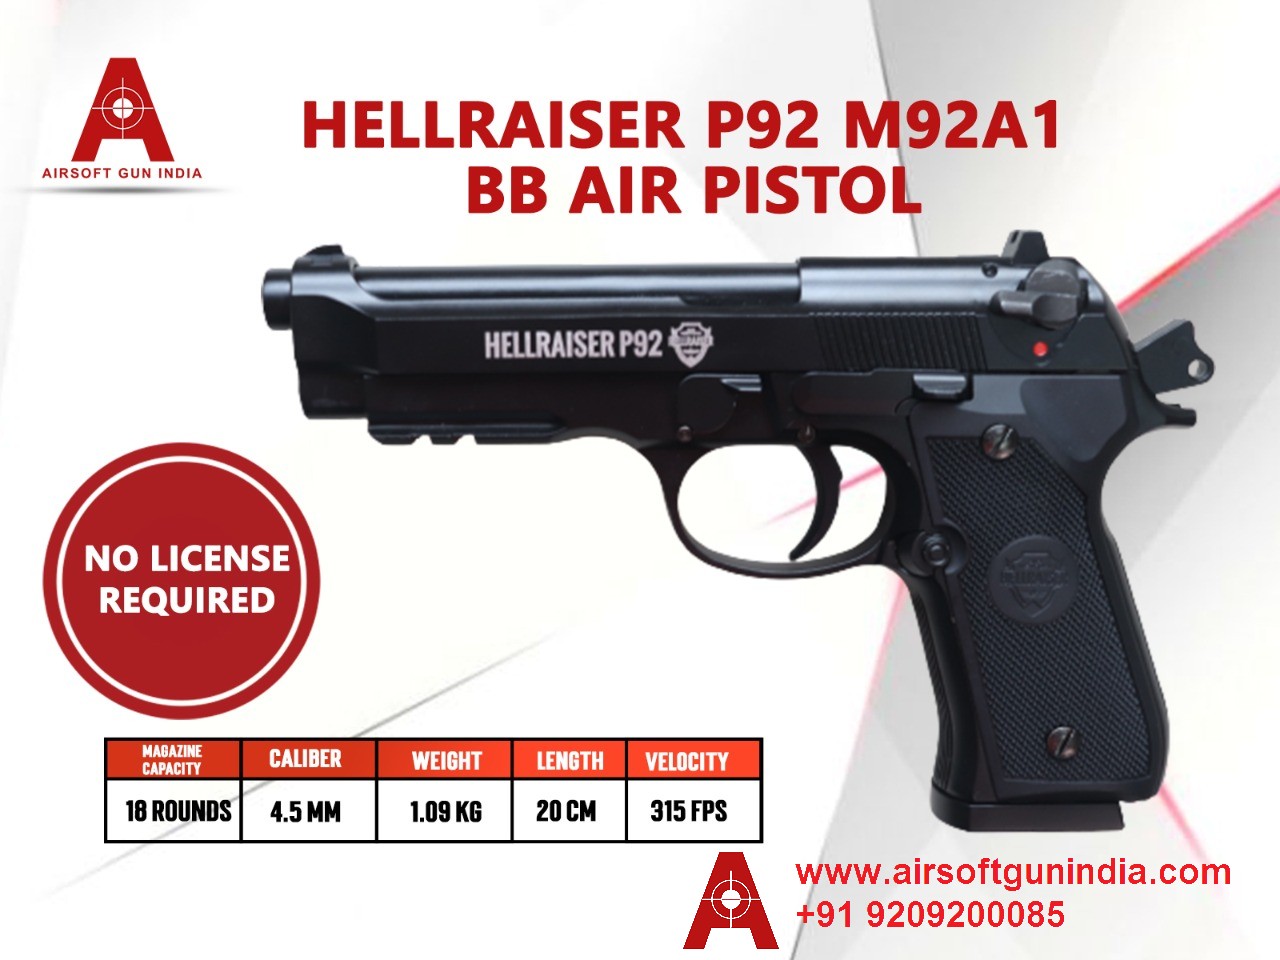 Hellraiser P92 M92A1 CO2 BB .177Cal, 4.5mm Air Pistol By Airsoft Gun India